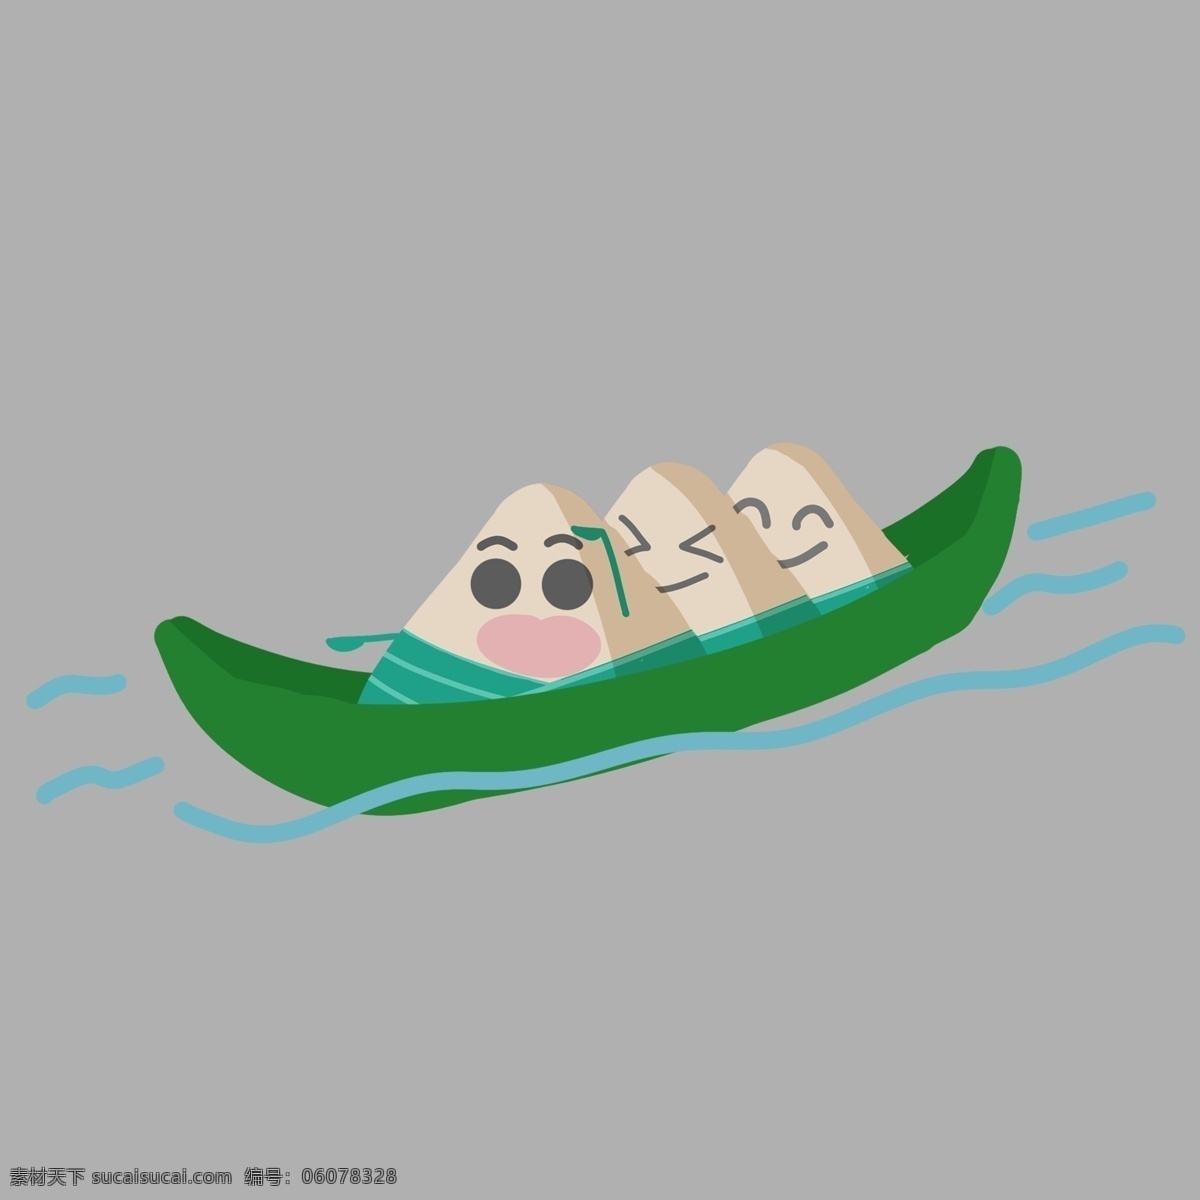 划船 比赛 卡通 插画 划船比赛 卡通插画 节日插画 端午节快乐 吃粽子插画 节气 绿色的小船 船只